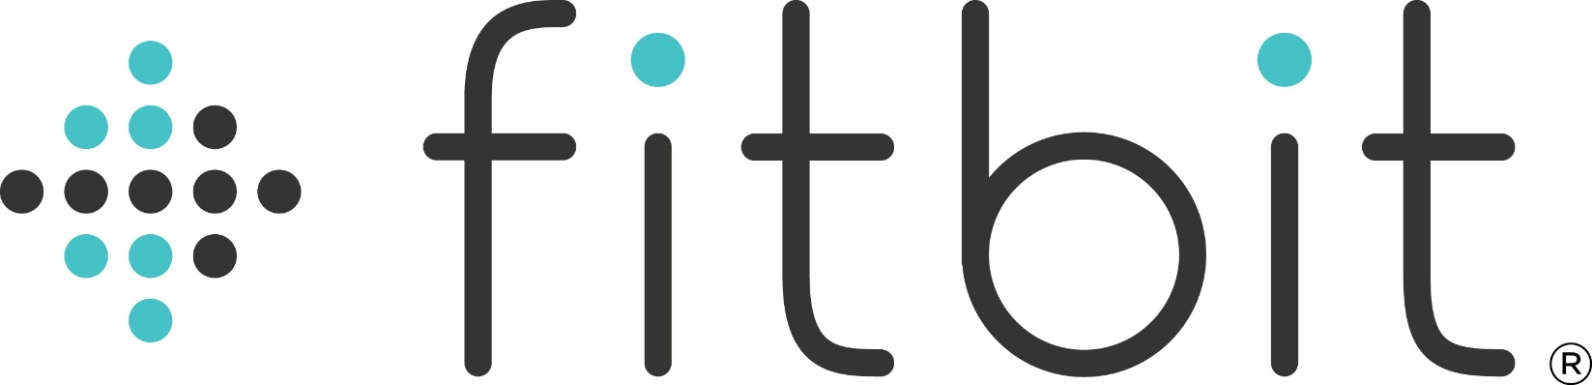 Логотип Fitbit